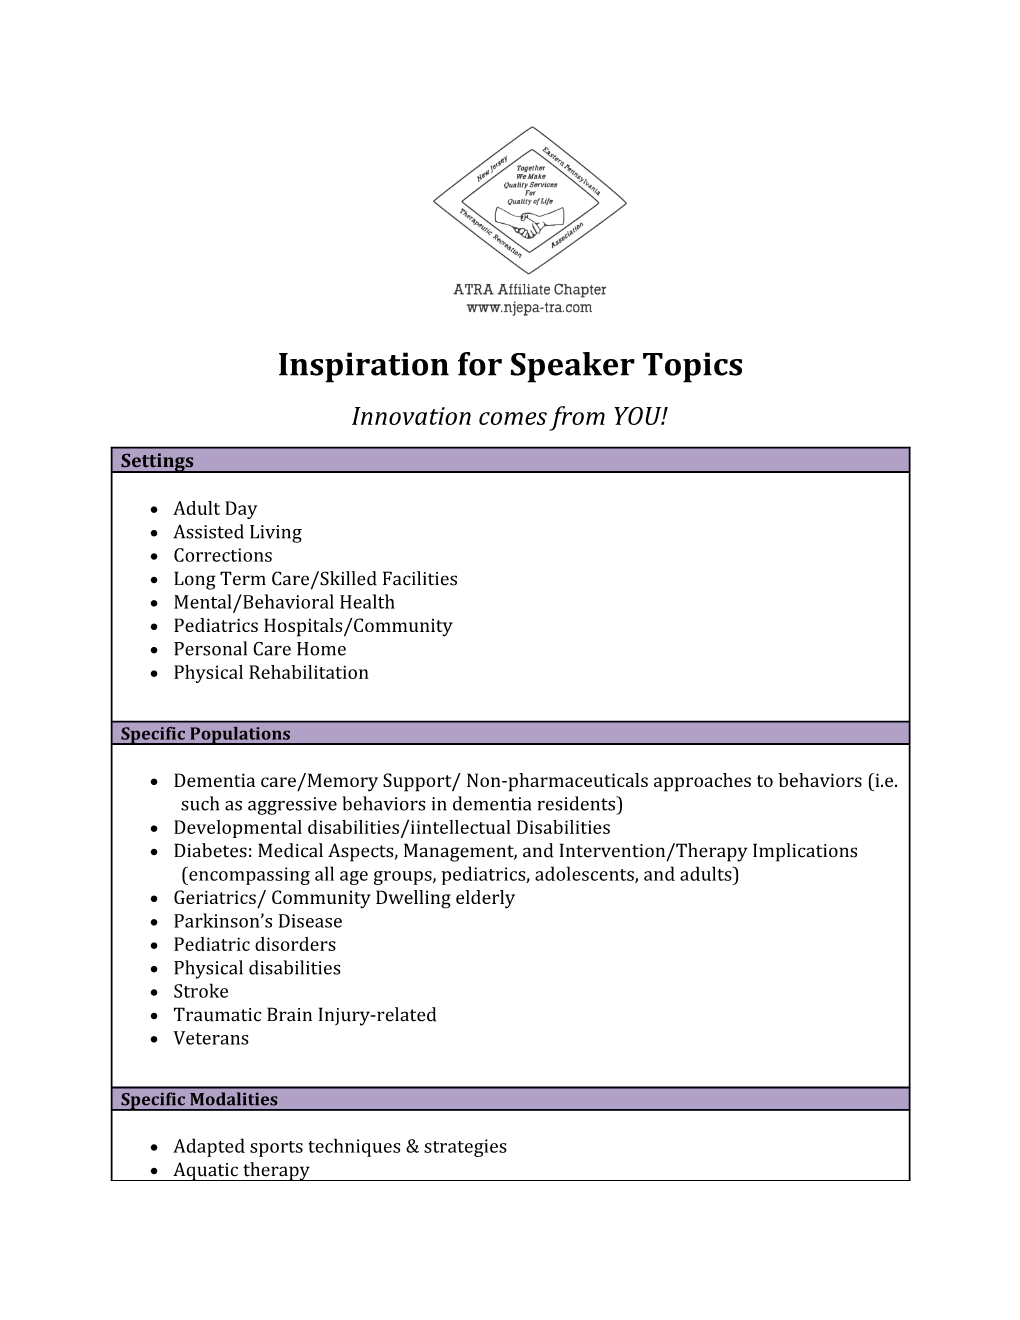 Inspiration for Speaker Topics